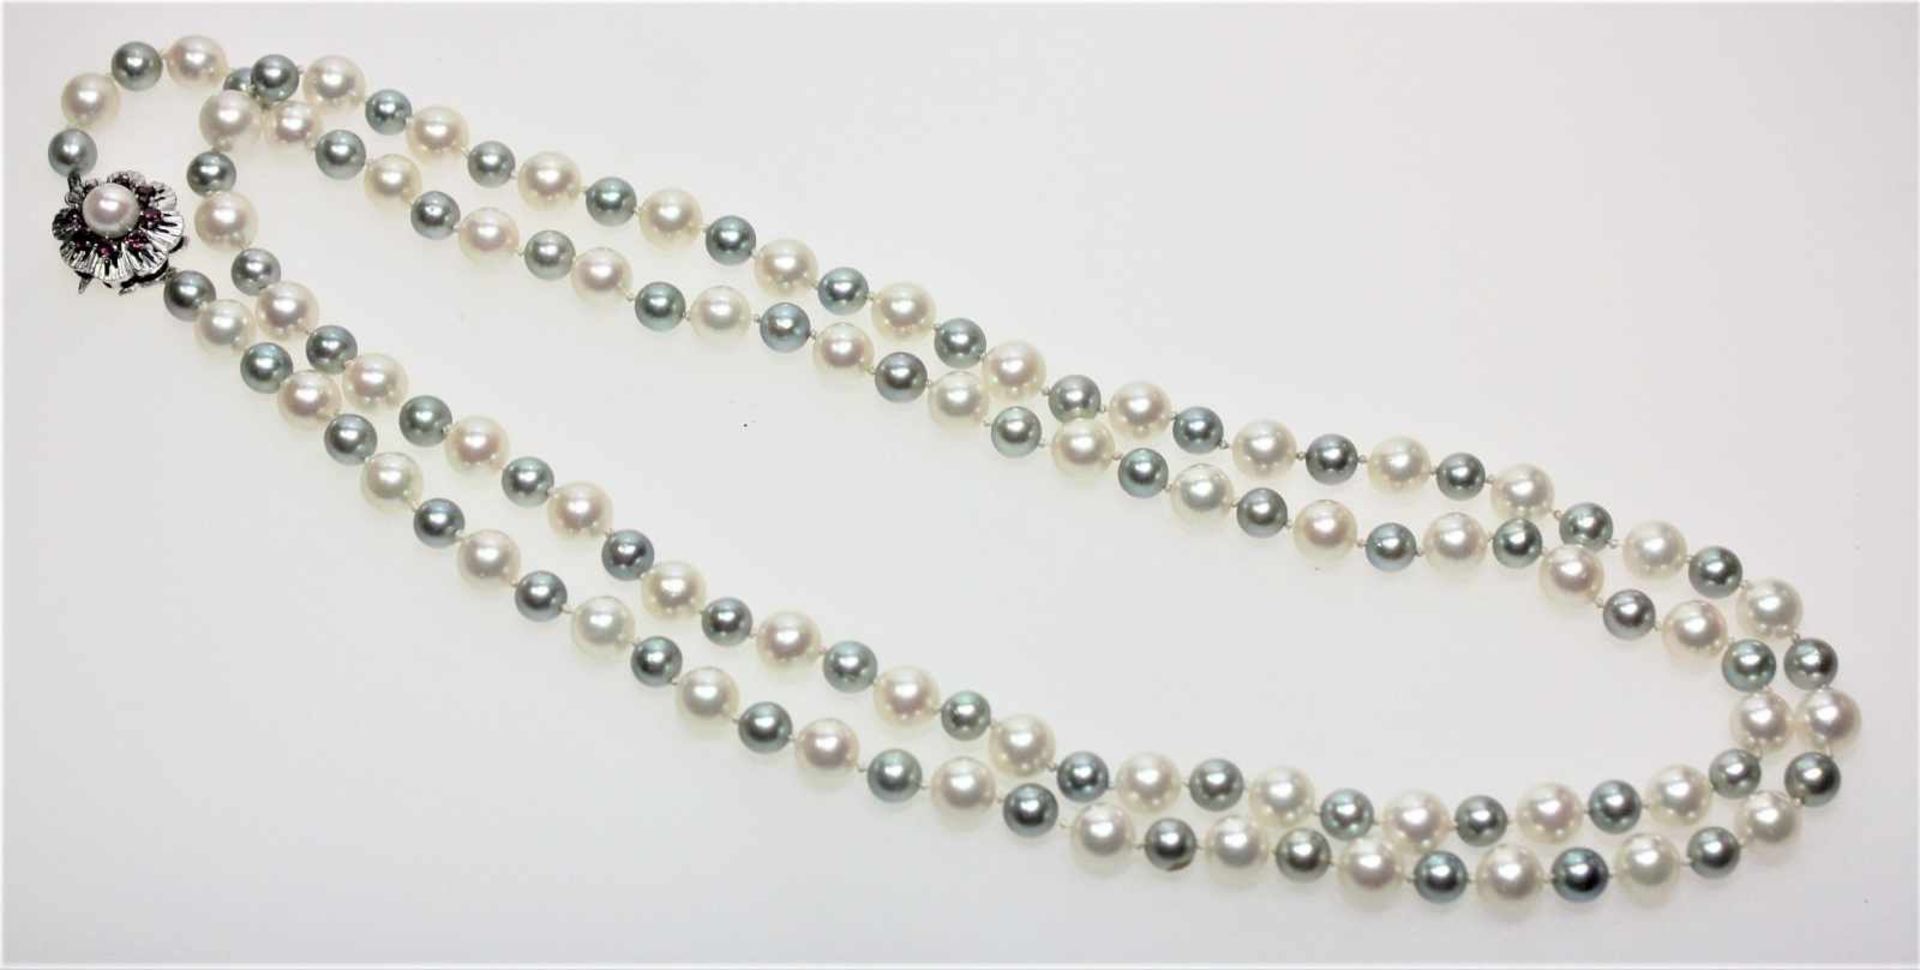 Lange Zuchtperlkette, abwechselnd kleine graue und größere weiße Perlen, blütenförmige